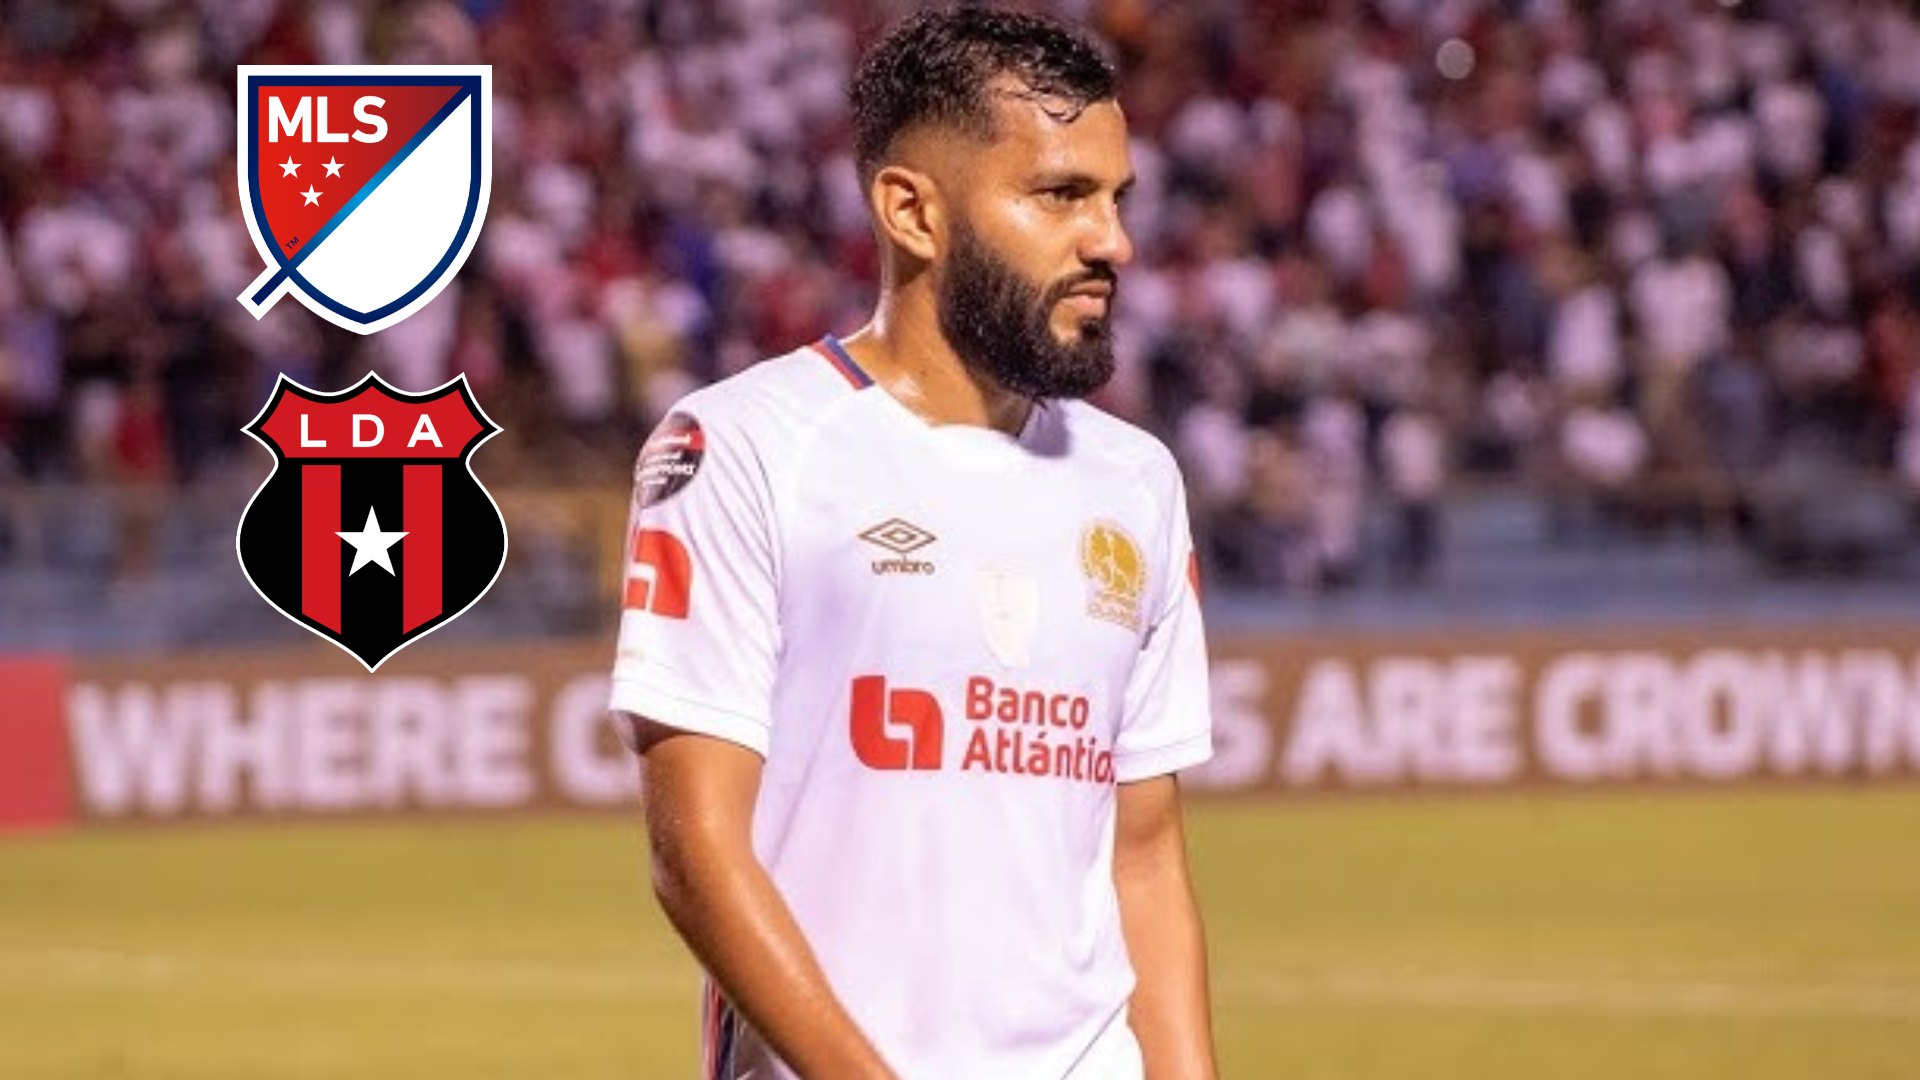 El interés del Alajuelense y equipos de la MLS en Jorge Álvarez no solo responde a una necesidad deportiva, sino también a un reconocimiento del talento y potencial que el jugador posee.